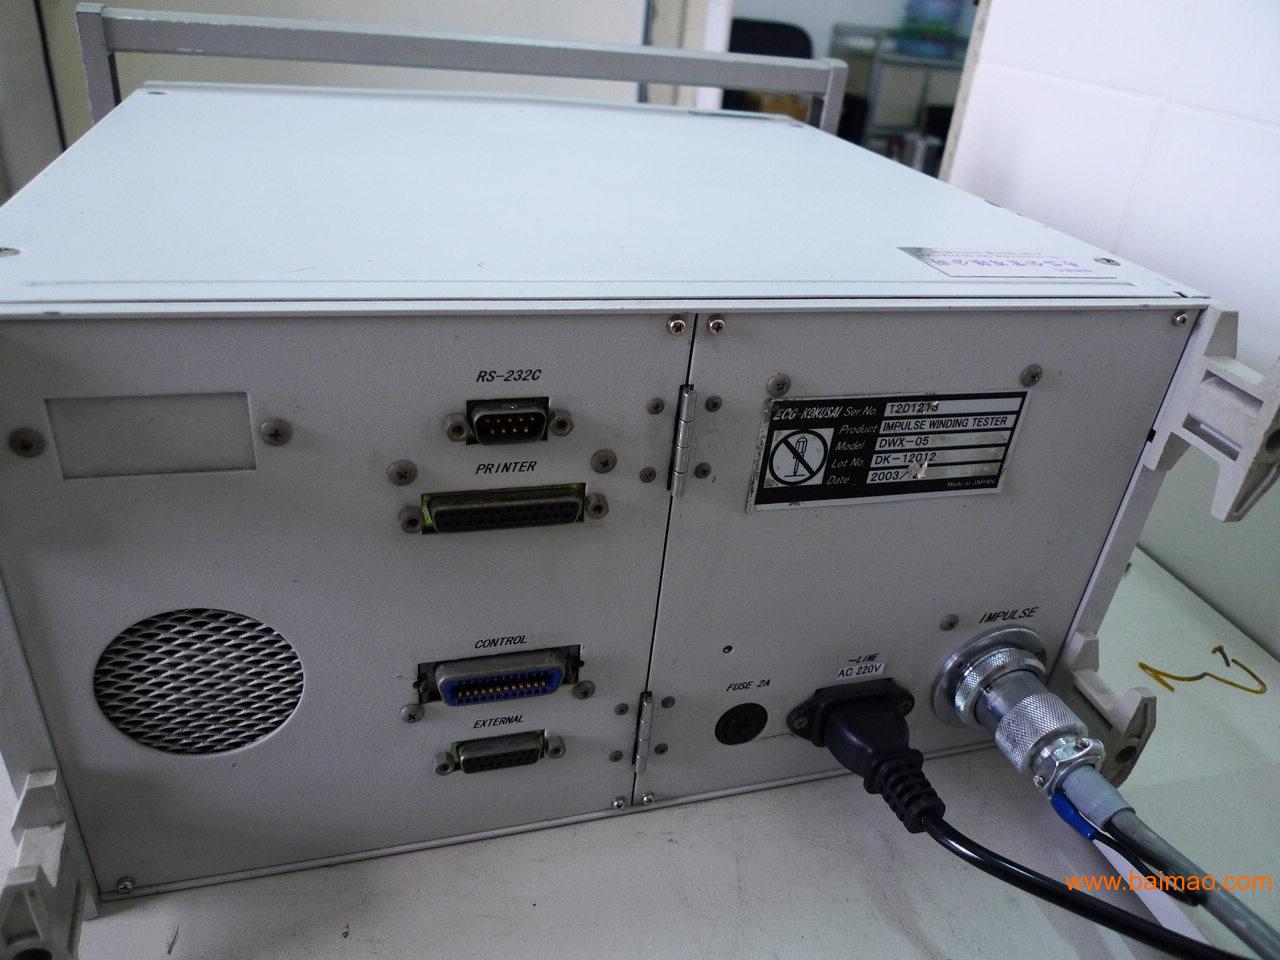 日本ECG DWX-05脉冲检测机